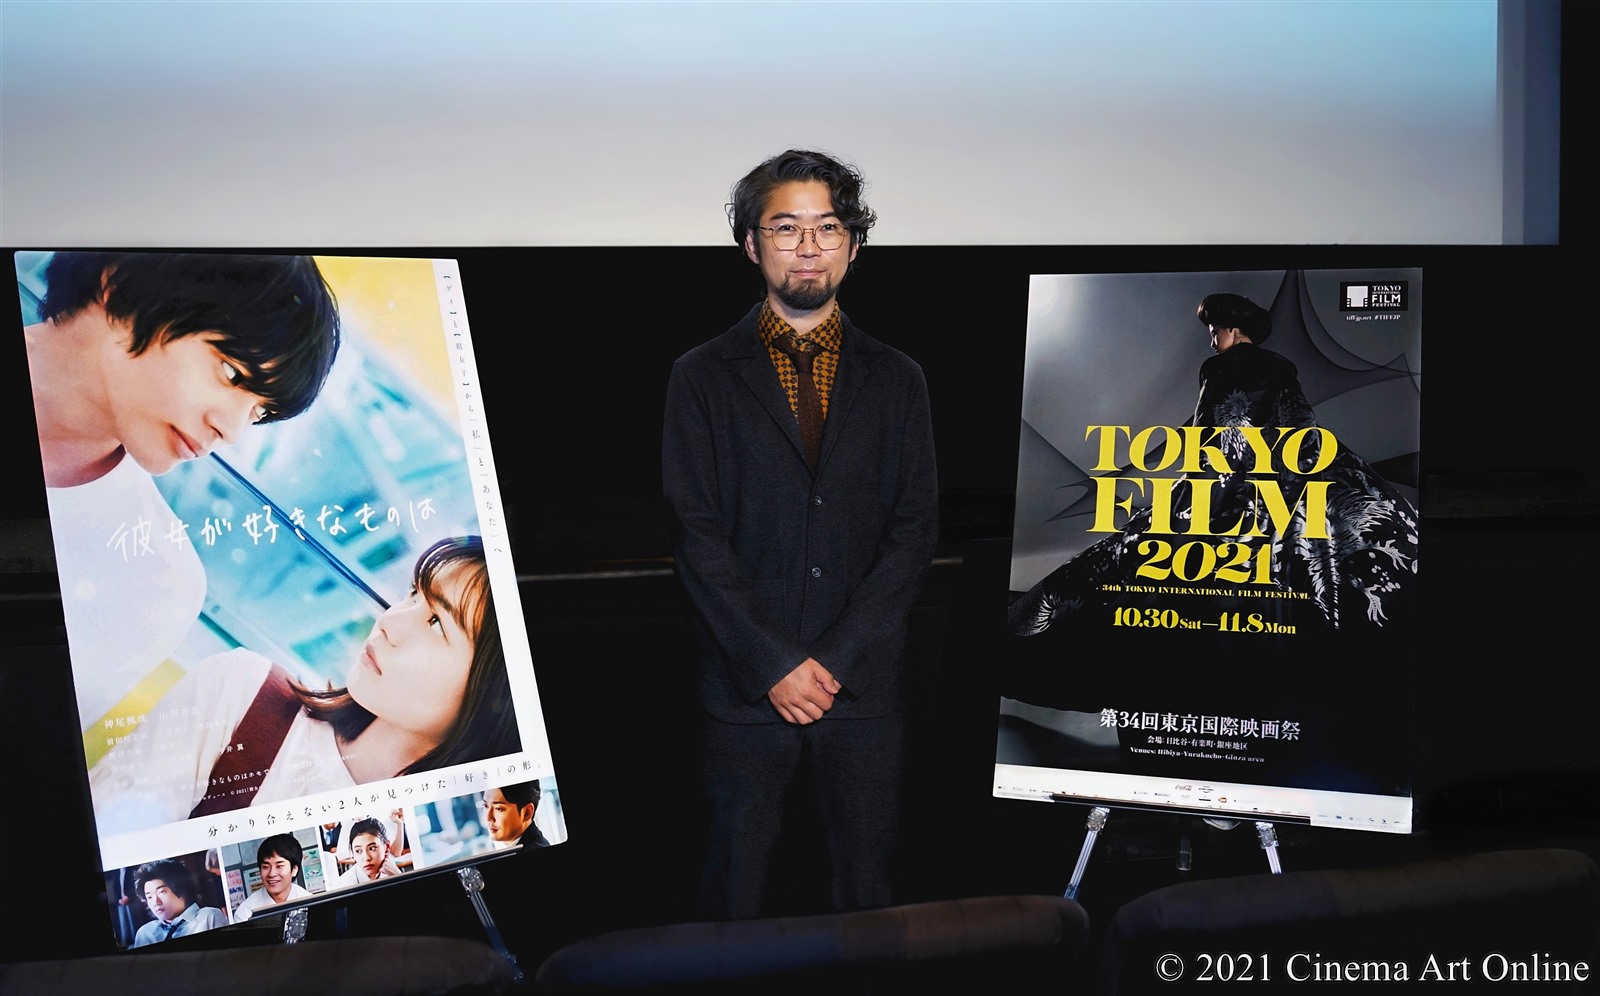 【写真】第34回 東京国際映画祭(TIFF) Nippon Cinema Now部門 映画『彼女が好きなものは』Q&A (草野翔吾監督)